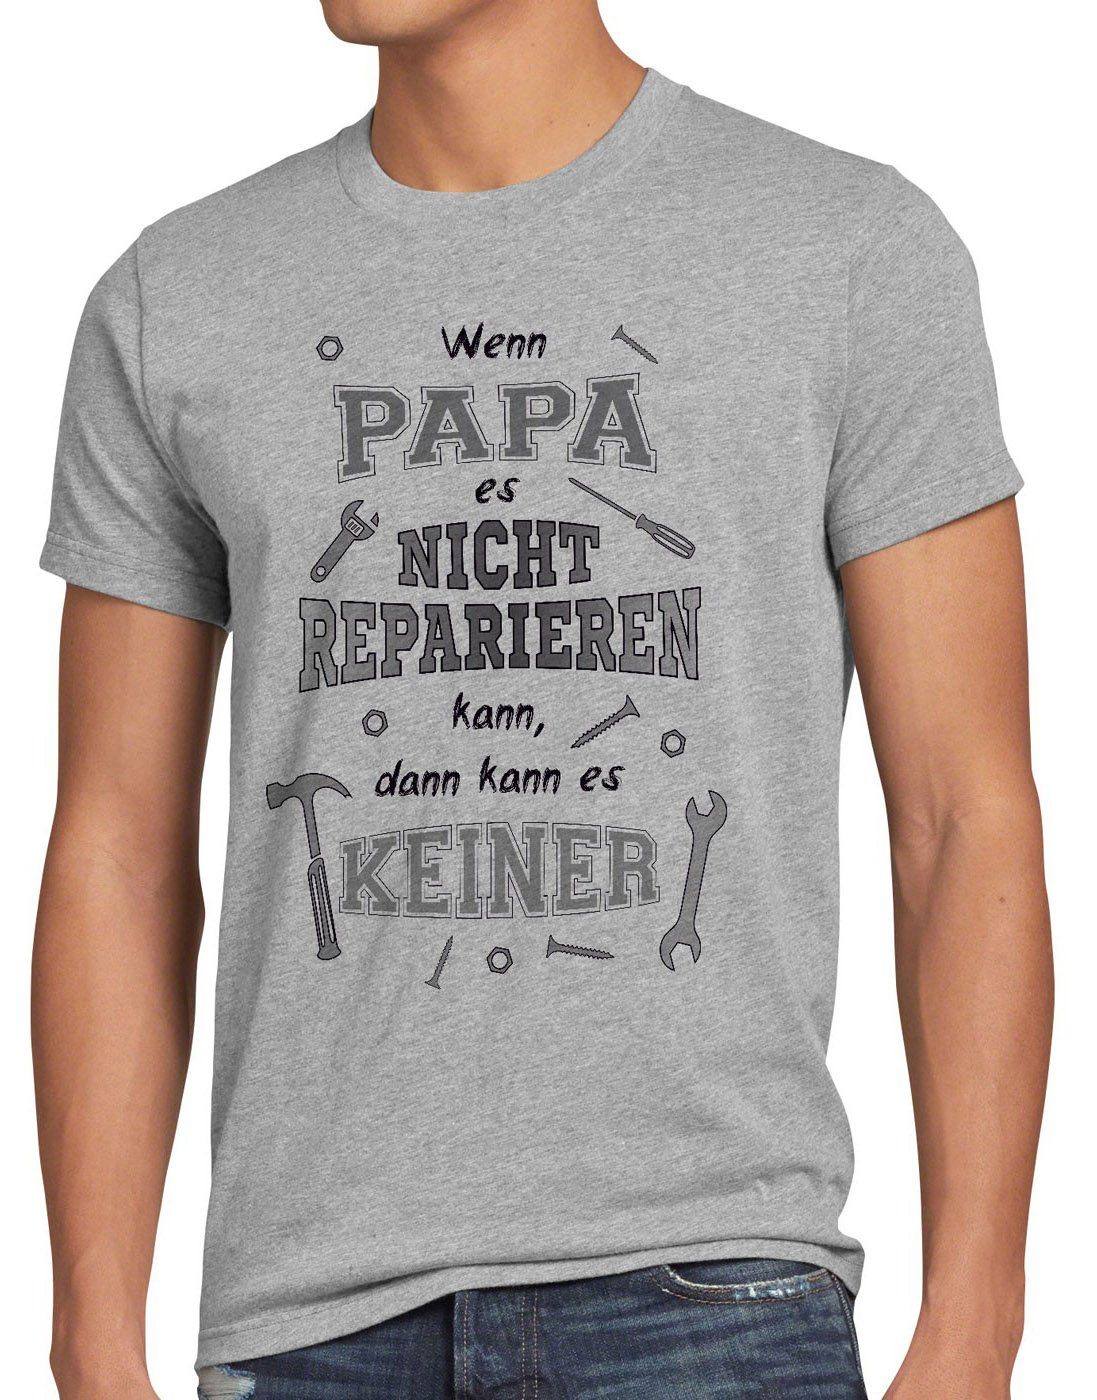 style3 Wenn Papa T-Shirt Spruch kann keiner es meliert reparieren Print-Shirt grau nicht Funshirt Shirt Herren